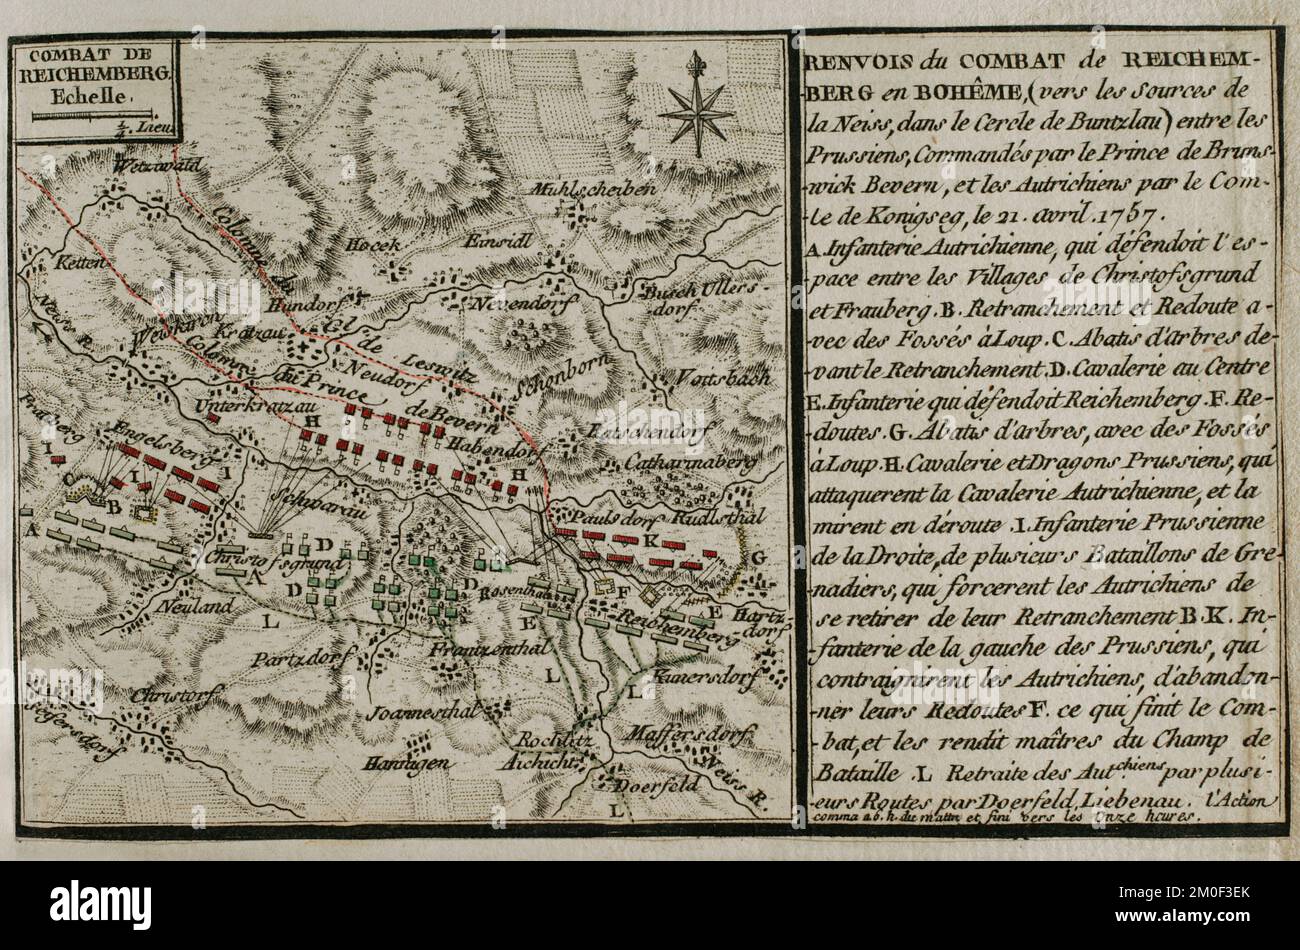 Guerra dei sette anni (1756-1763). Mappa della Battaglia di Reichenberg (21 aprile 1757). L'esercito prussiano, sotto il comando di August Wilhelm, Duca di Brunswick-Bevern (1715-1781), sconfisse l'esercito austriaco guidato da Christian Moritz Graf Königsegg und Rothenfels (1705-1778). Pubblicato nel 1765 dal cartografo Jean de Beaurain (1696-1771) come illustrazione della sua Grande carta della Germania, con gli eventi che si sono verificati durante la Guerra dei sette anni. Incisione e incisione. Edizione francese, 1765. Biblioteca storica militare di Barcellona (Biblioteca Histórico Militar de Barcelona). Catalogna. Spagna. Foto Stock